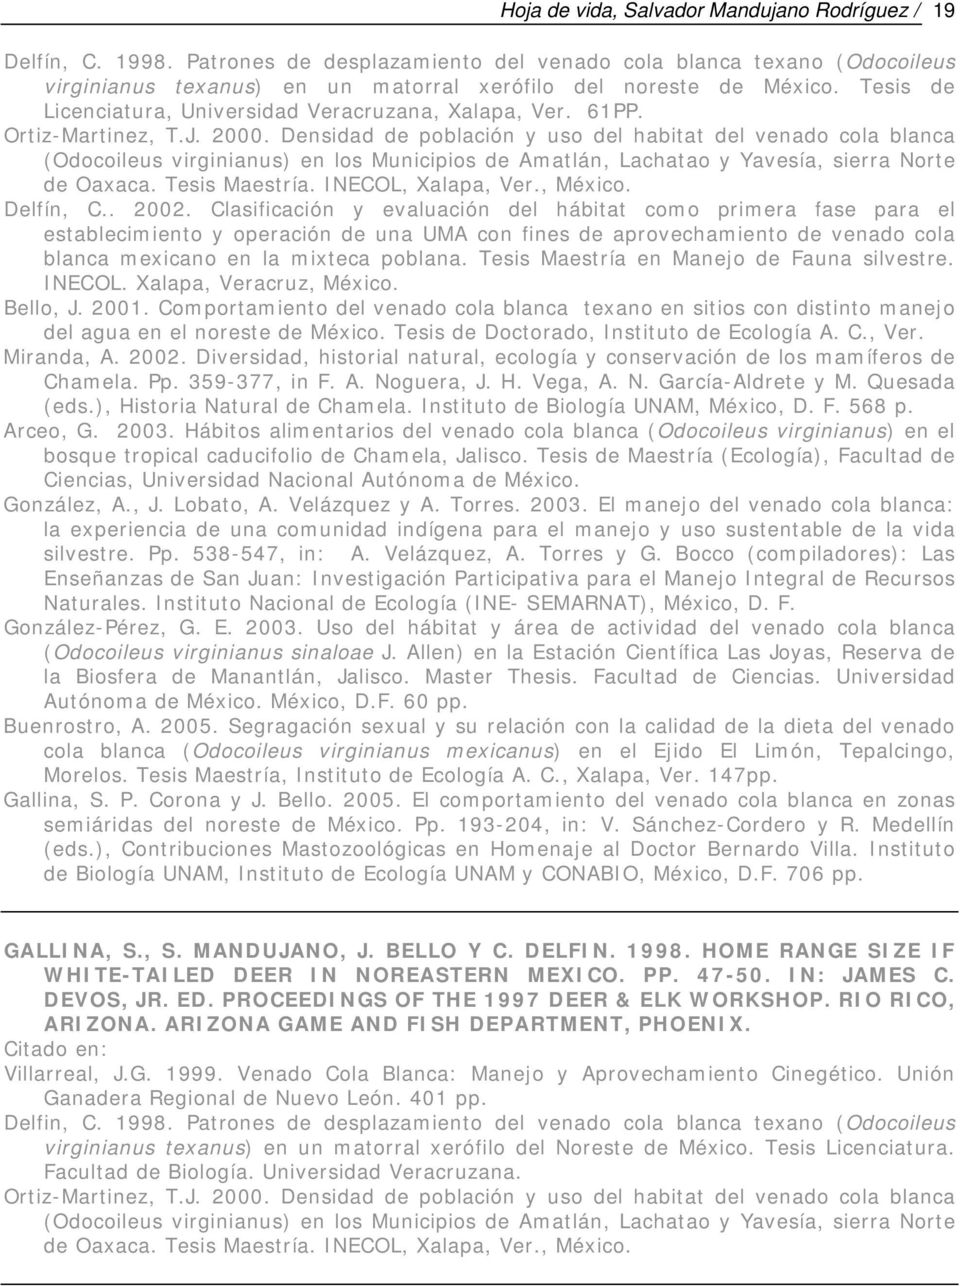 61PP. Ortiz-Martinez, T.J. 2000. Densidad de población y uso del habitat del venado cola blanca (Odocoileus virginianus) en los Municipios de Amatlán, Lachatao y Yavesía, sierra Norte de Oaxaca.